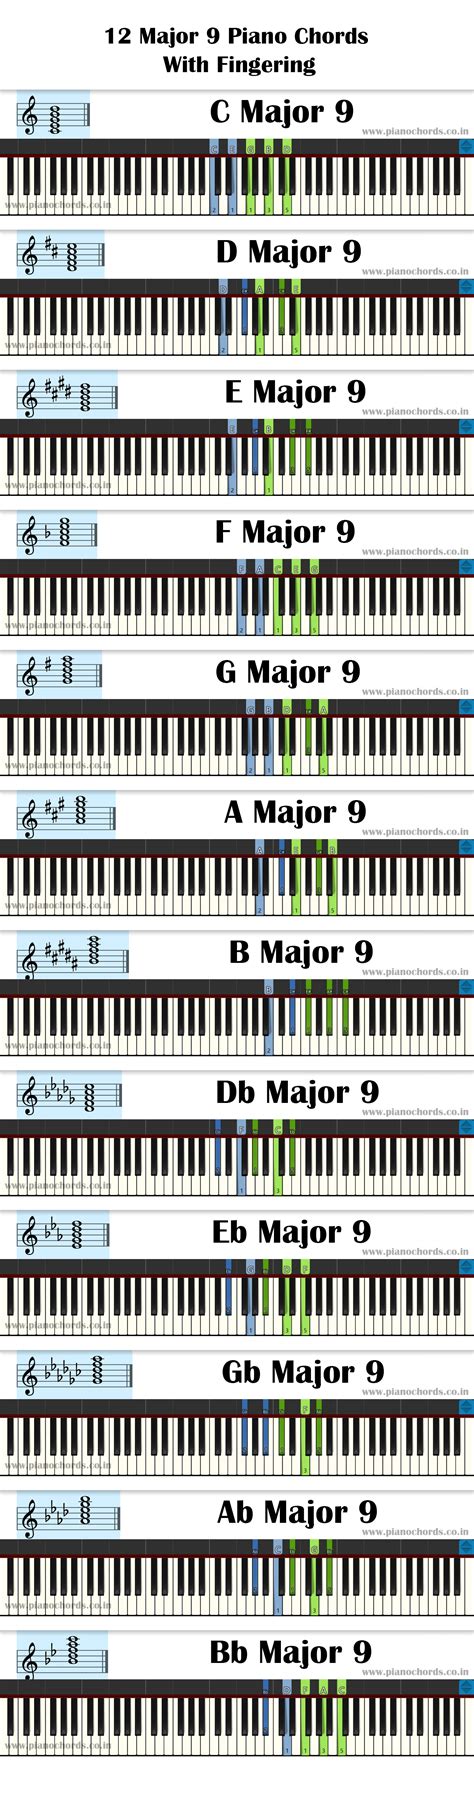 Piano Chord Chart Pdf Piano Chords Chart Piano Chords Keyboard Piano Images